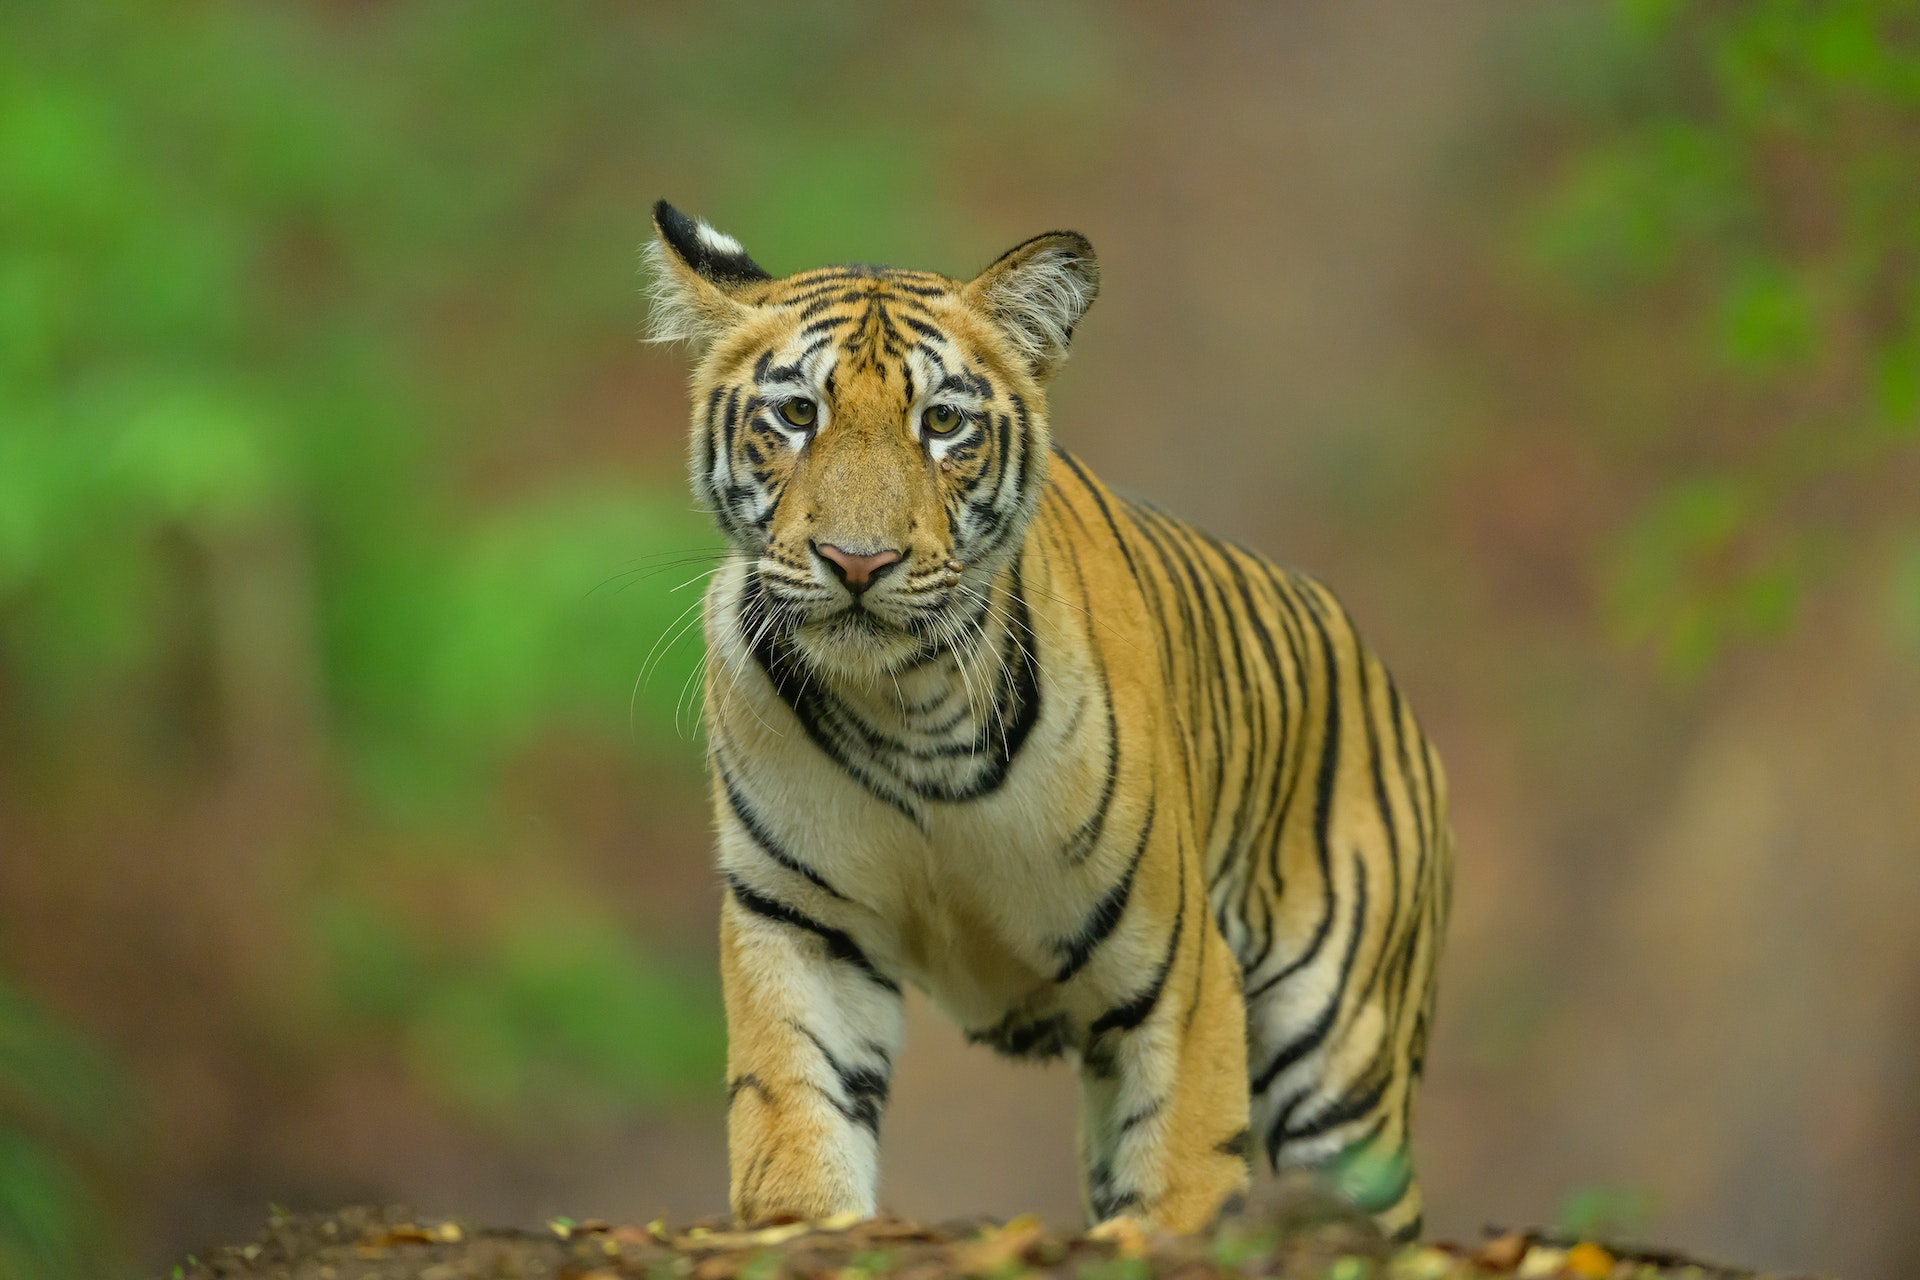 a young Bengal tiger cub